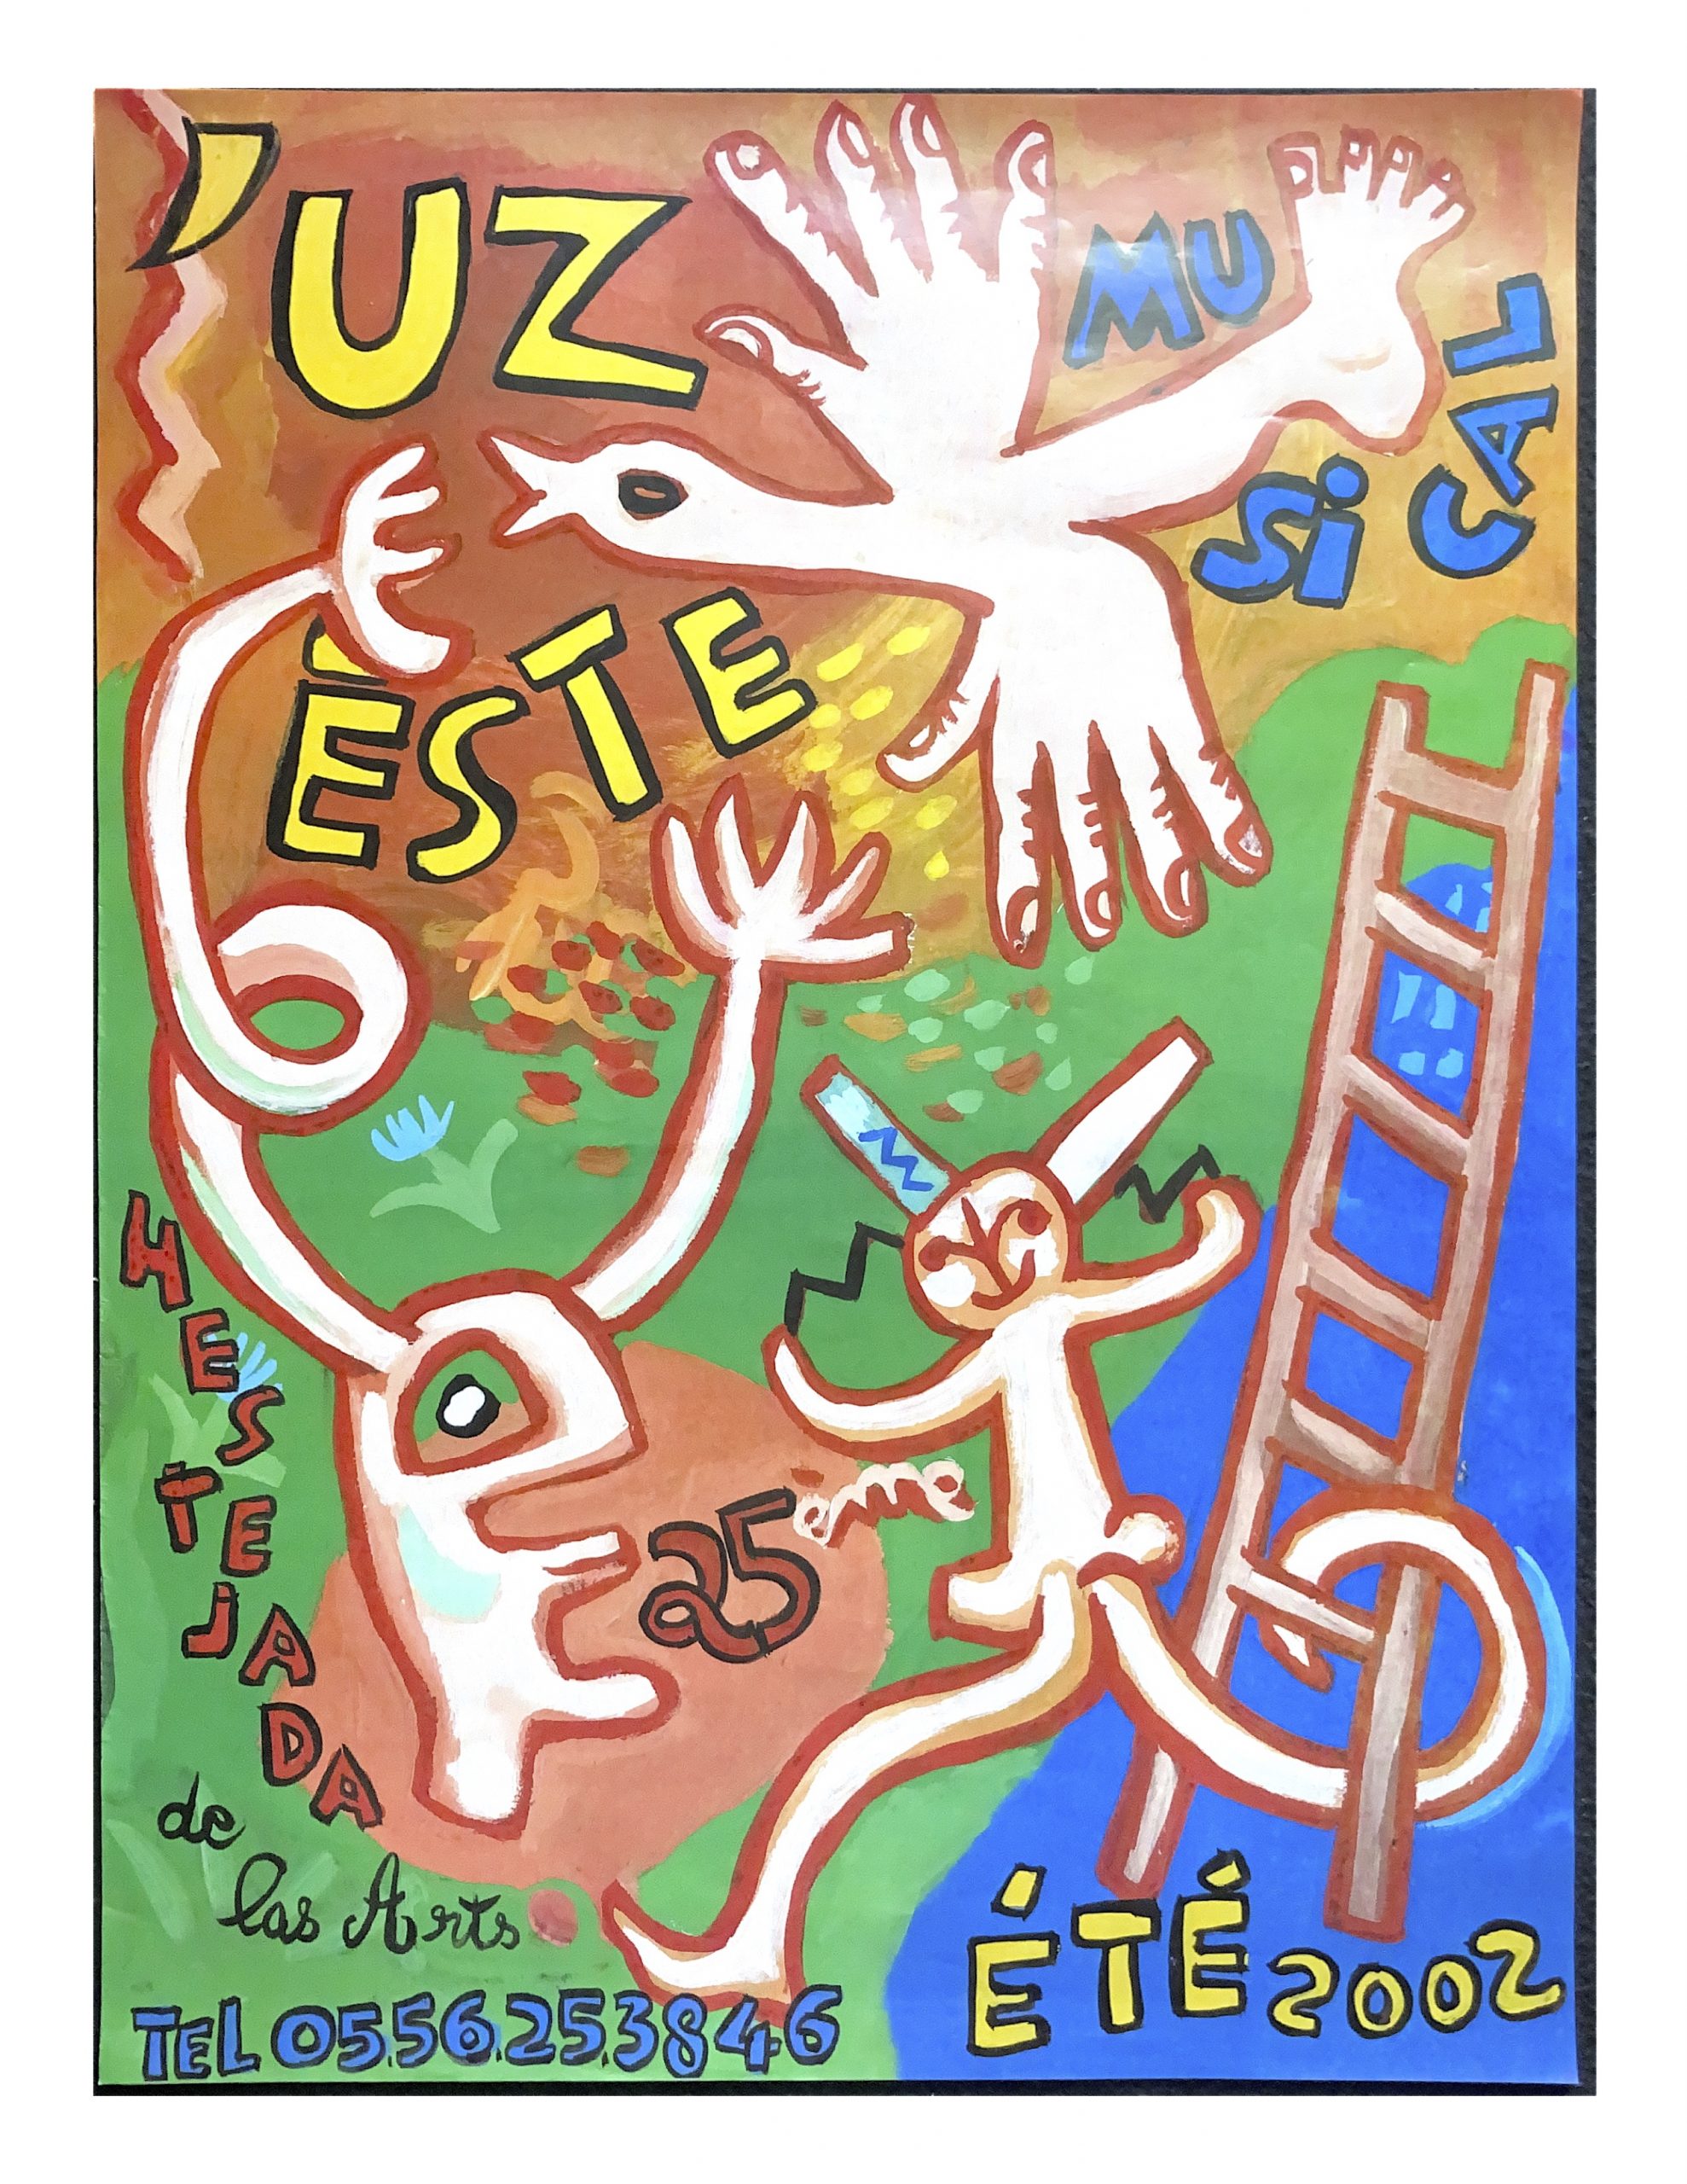 Affiche Hestejada 2002